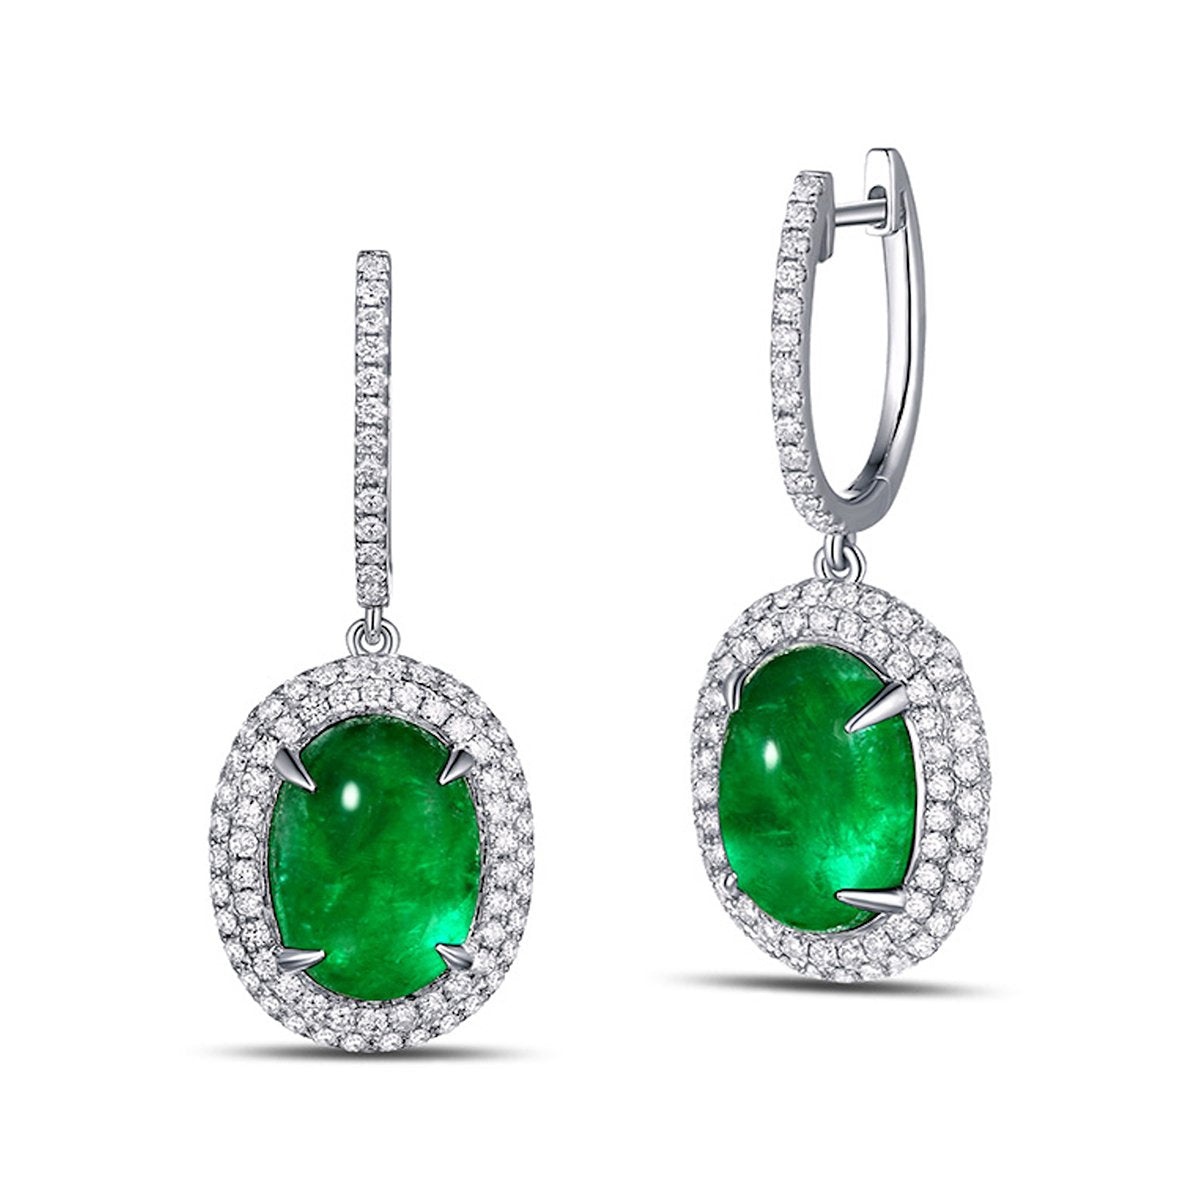 Cabochon Emerald Diamond Earrings | JewelStreet US